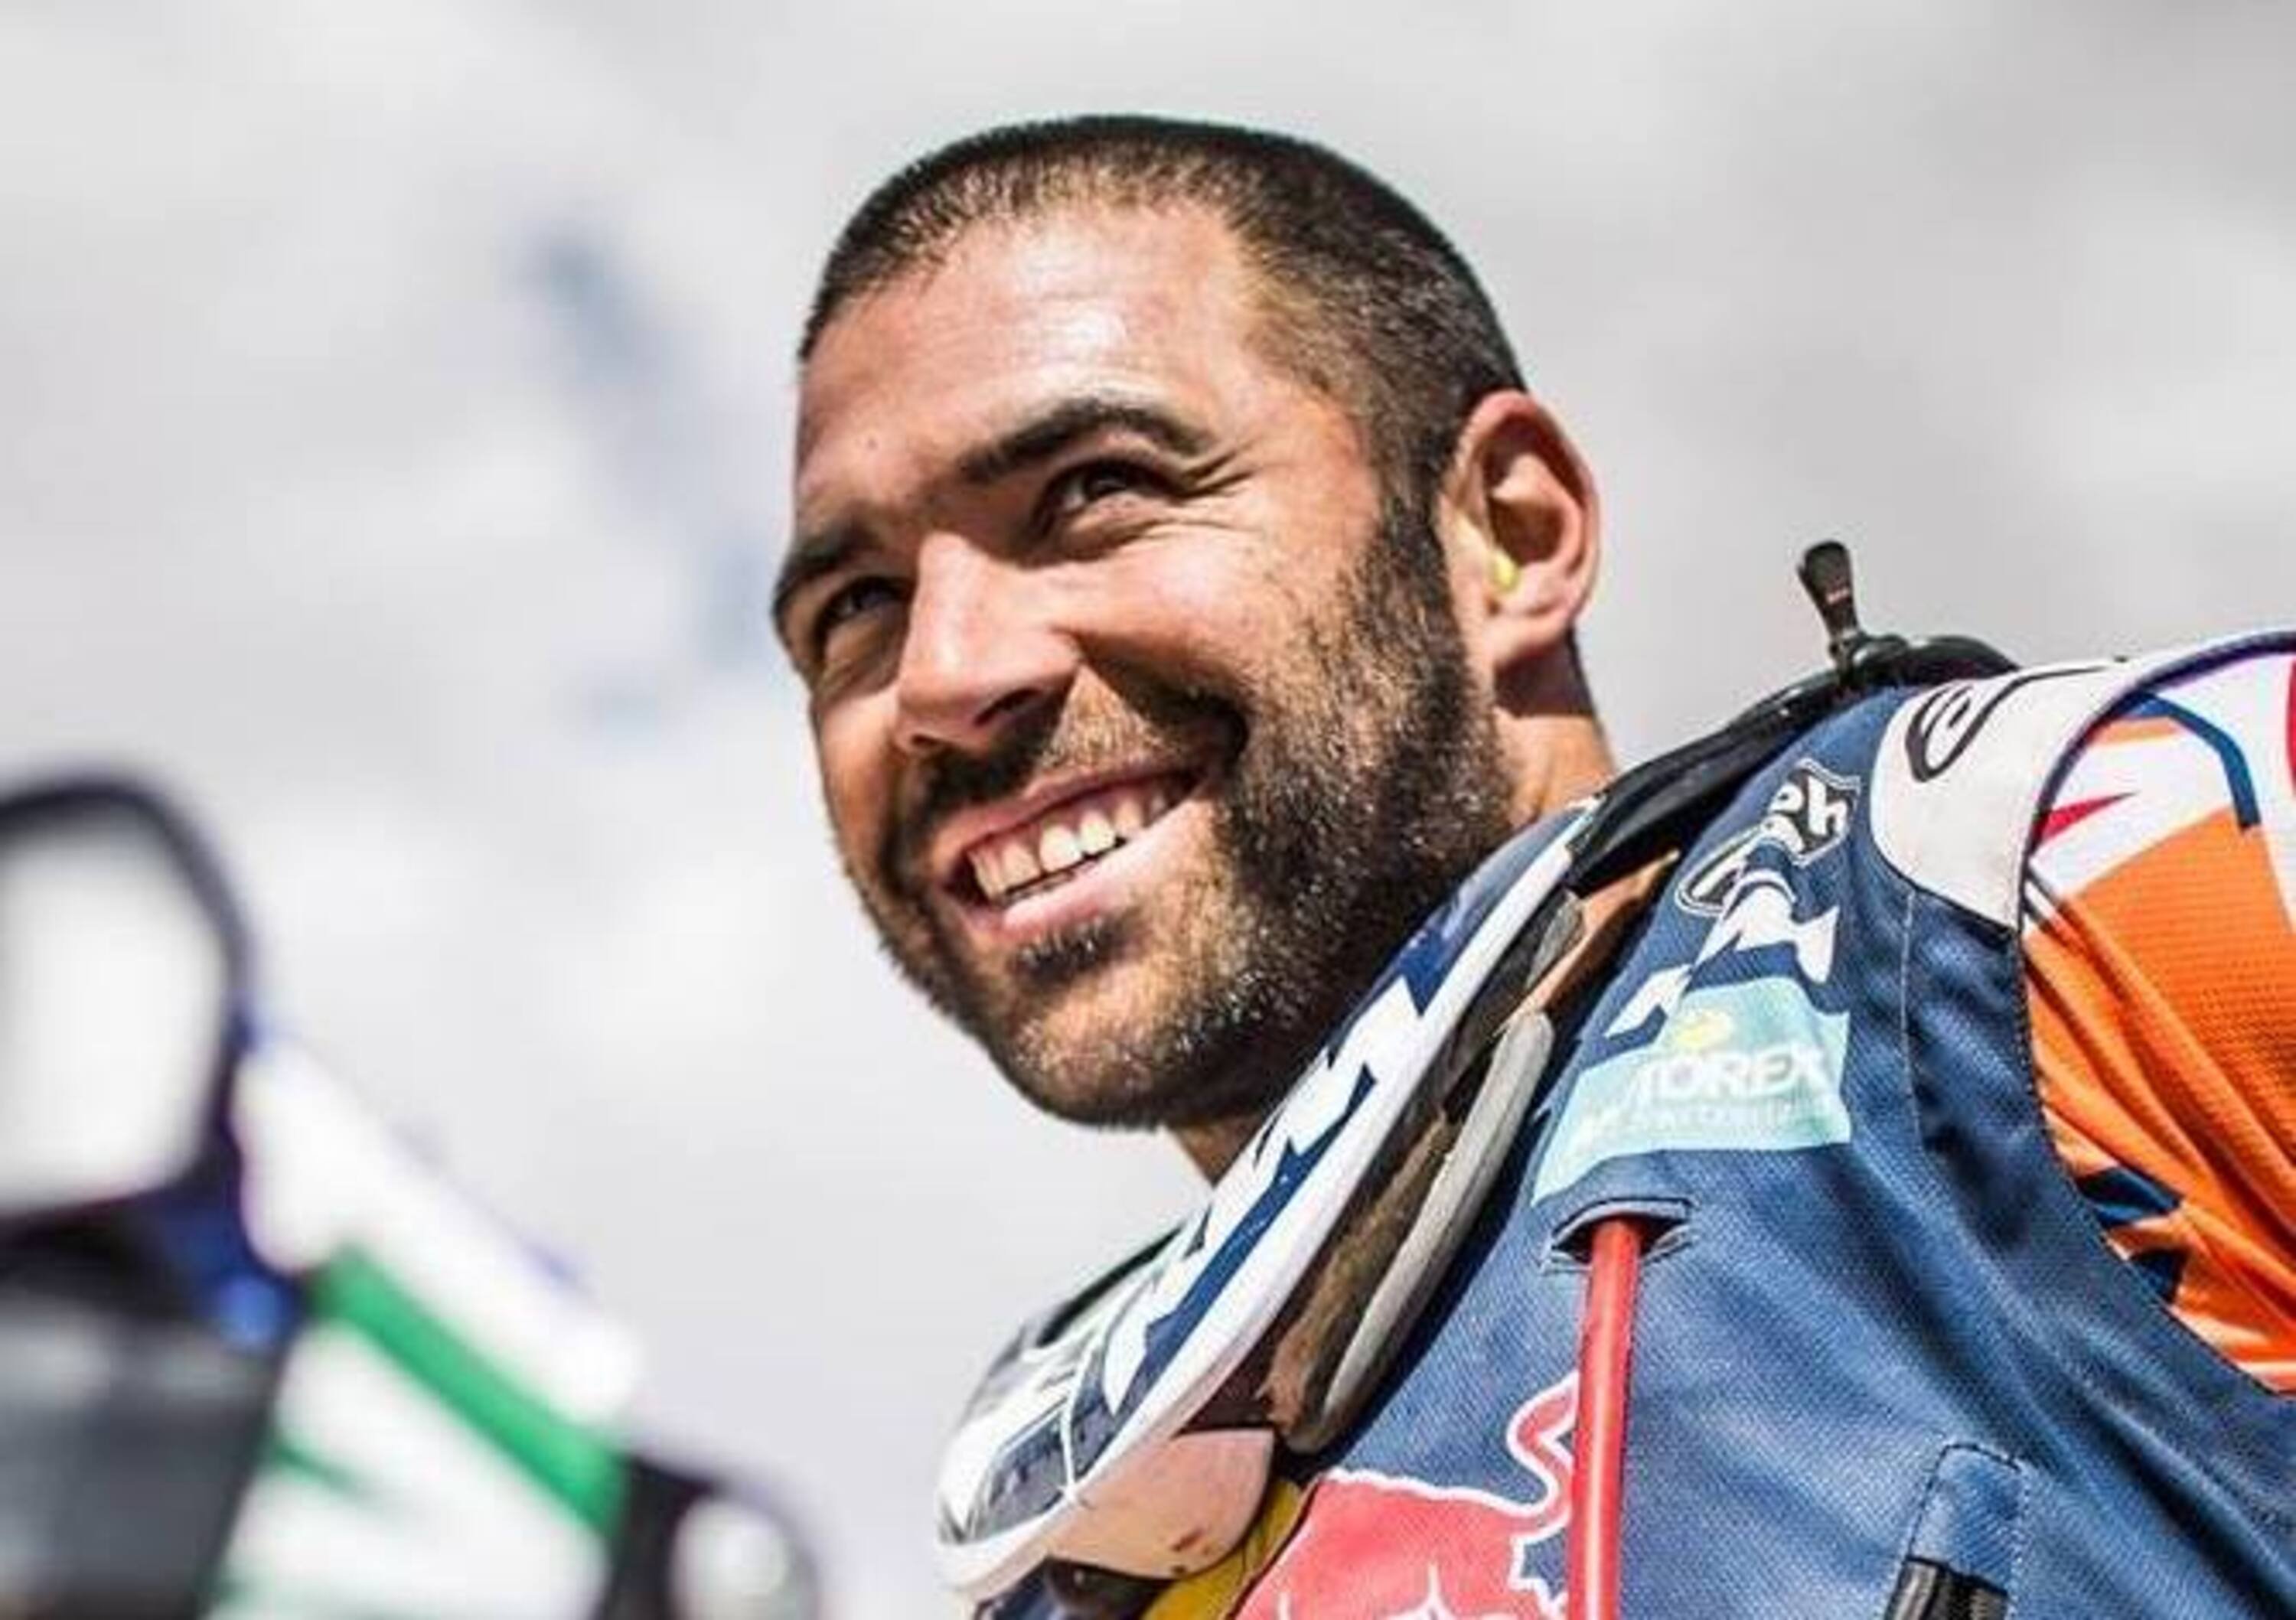 WRC 2018 Tour de Corse. Guarda chi si rivede: Antoine Meo!